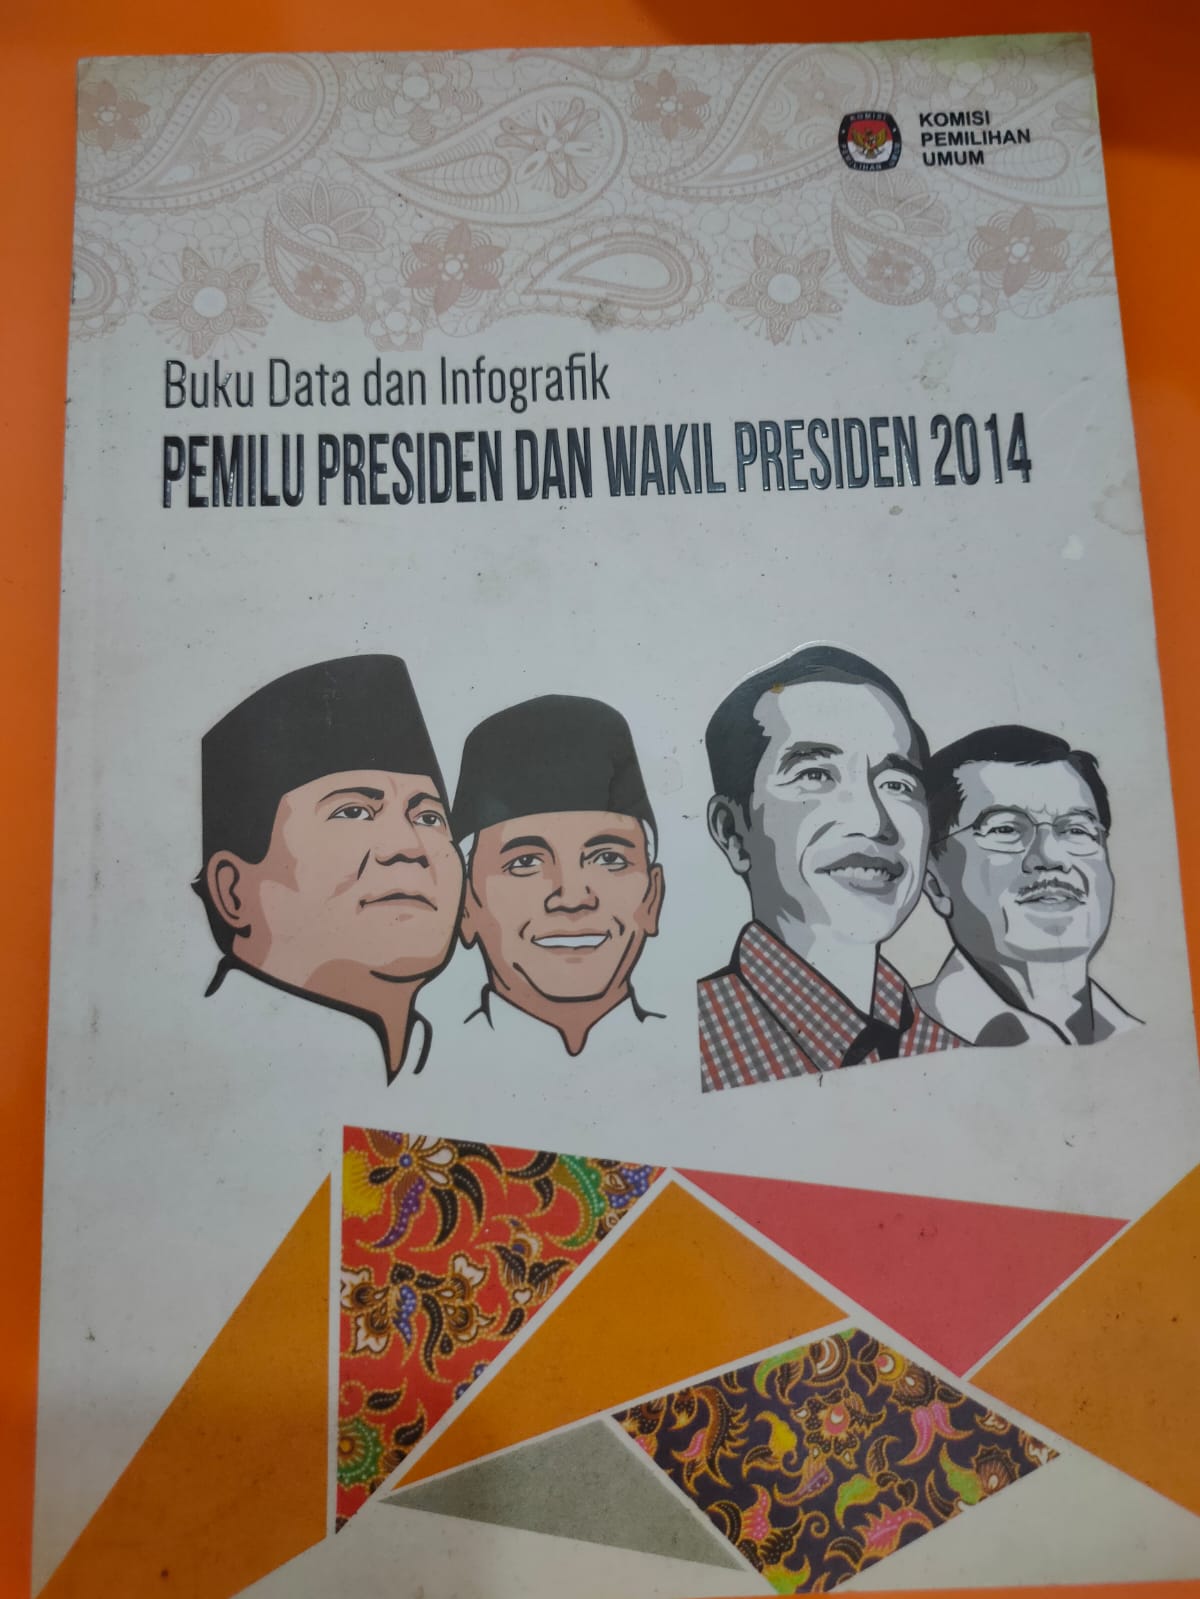 Buku Data dan Infografik PEMILU PRESIDEN DAN WAKIL PRESIDEN 2014